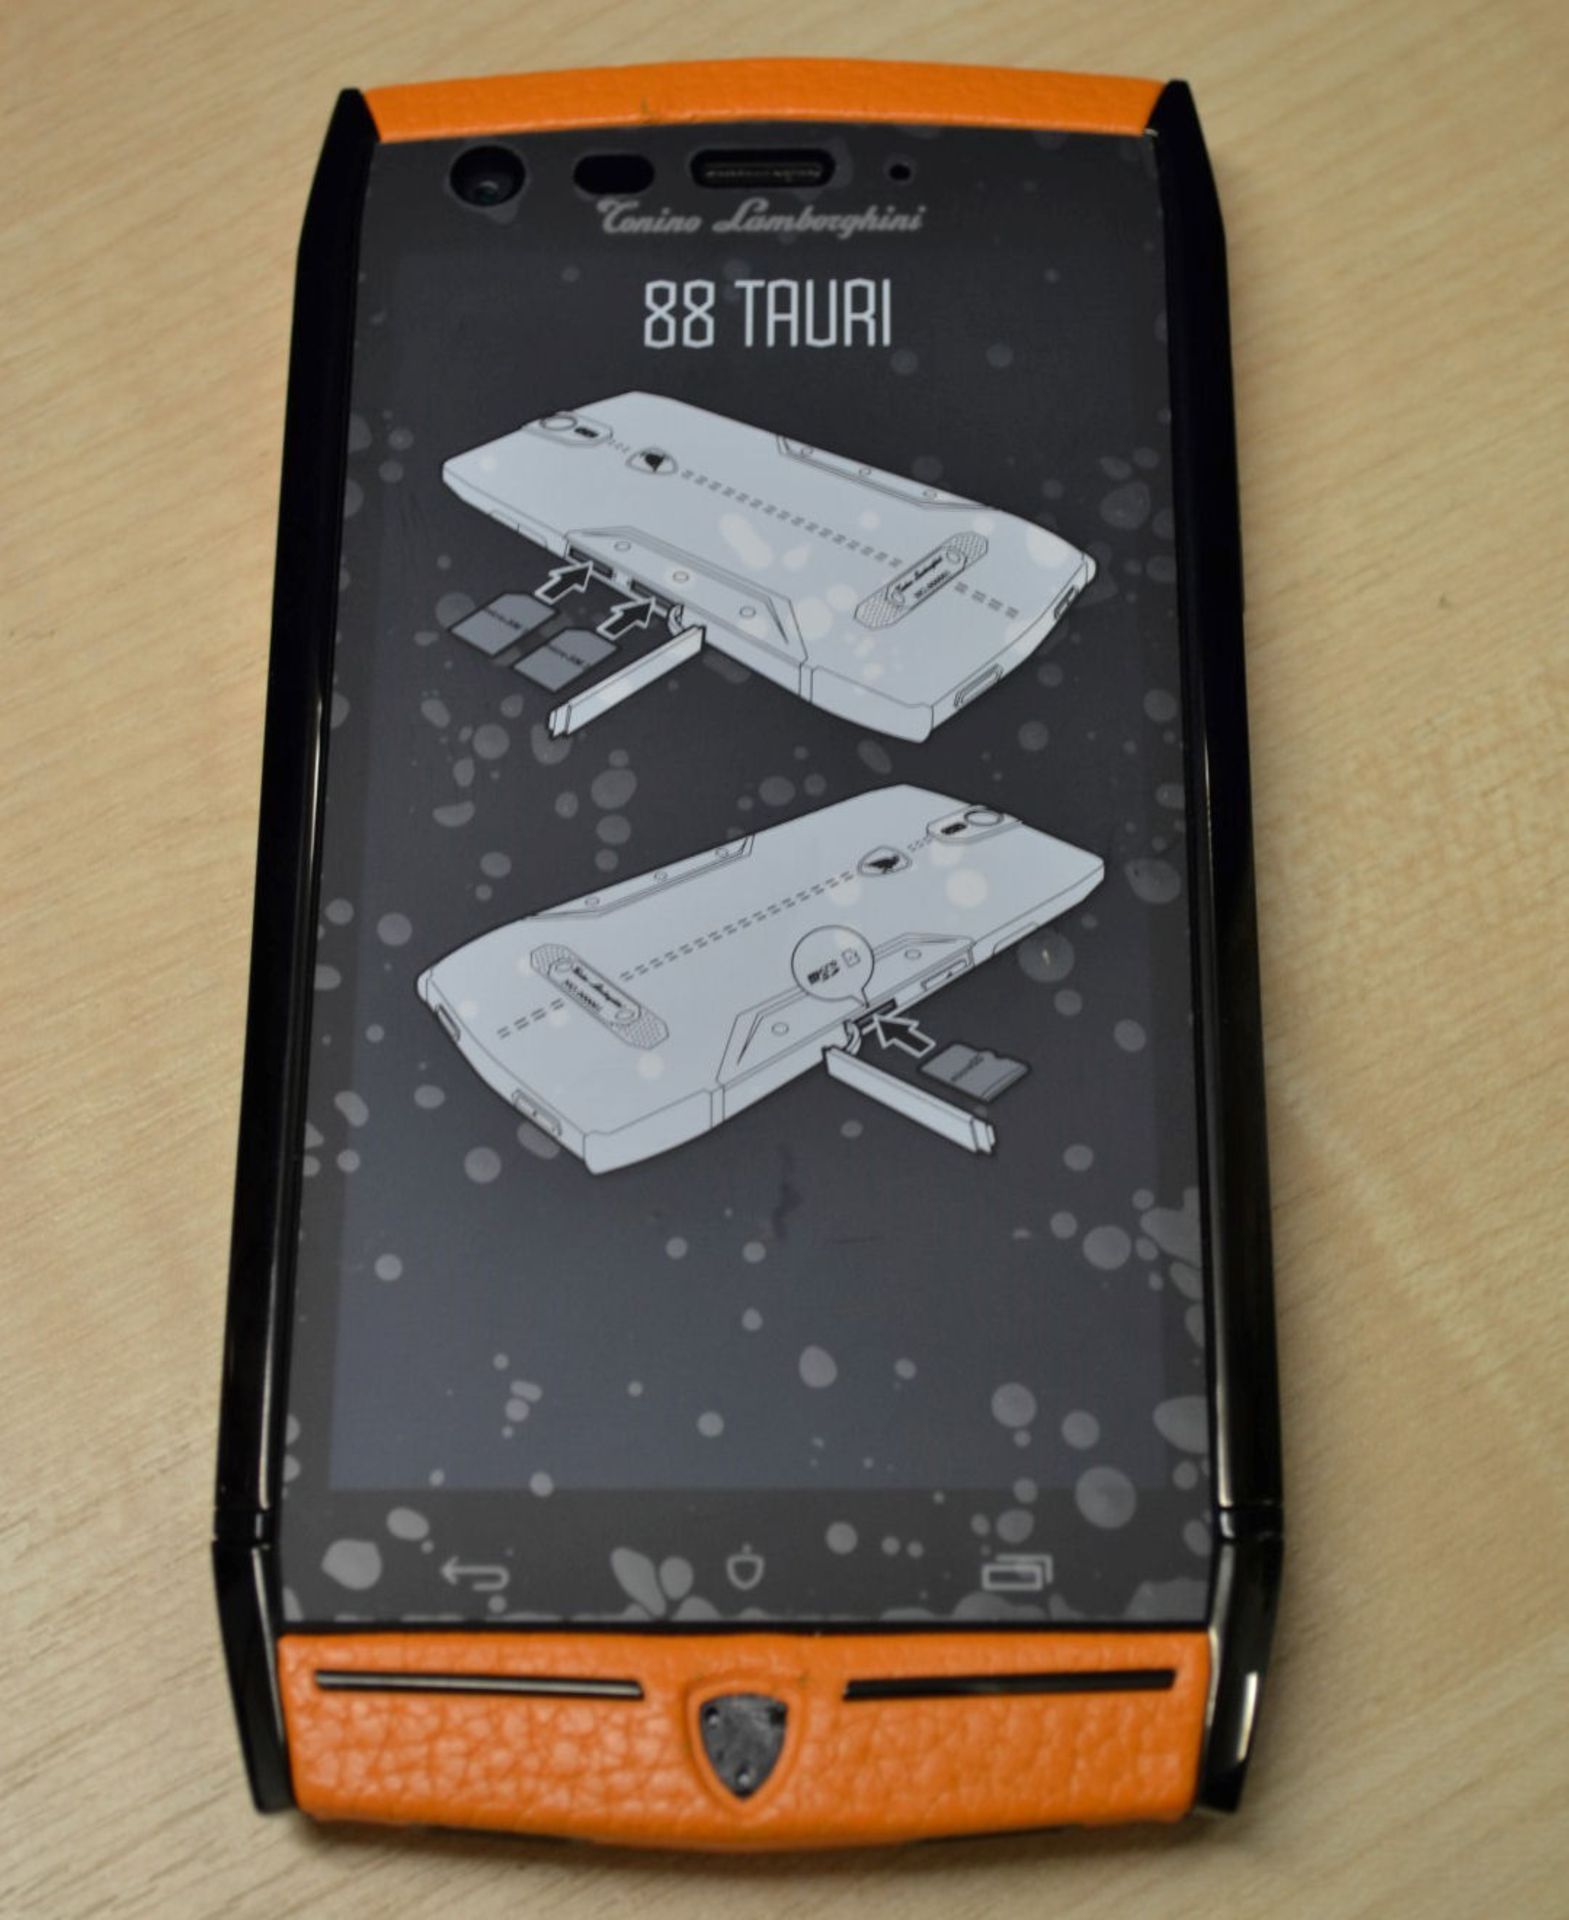 1 x Limited Edition Lamborghini "88 Tauri" Android Smart Phone - Orange - Original RRP £4500 - Bild 7 aus 27